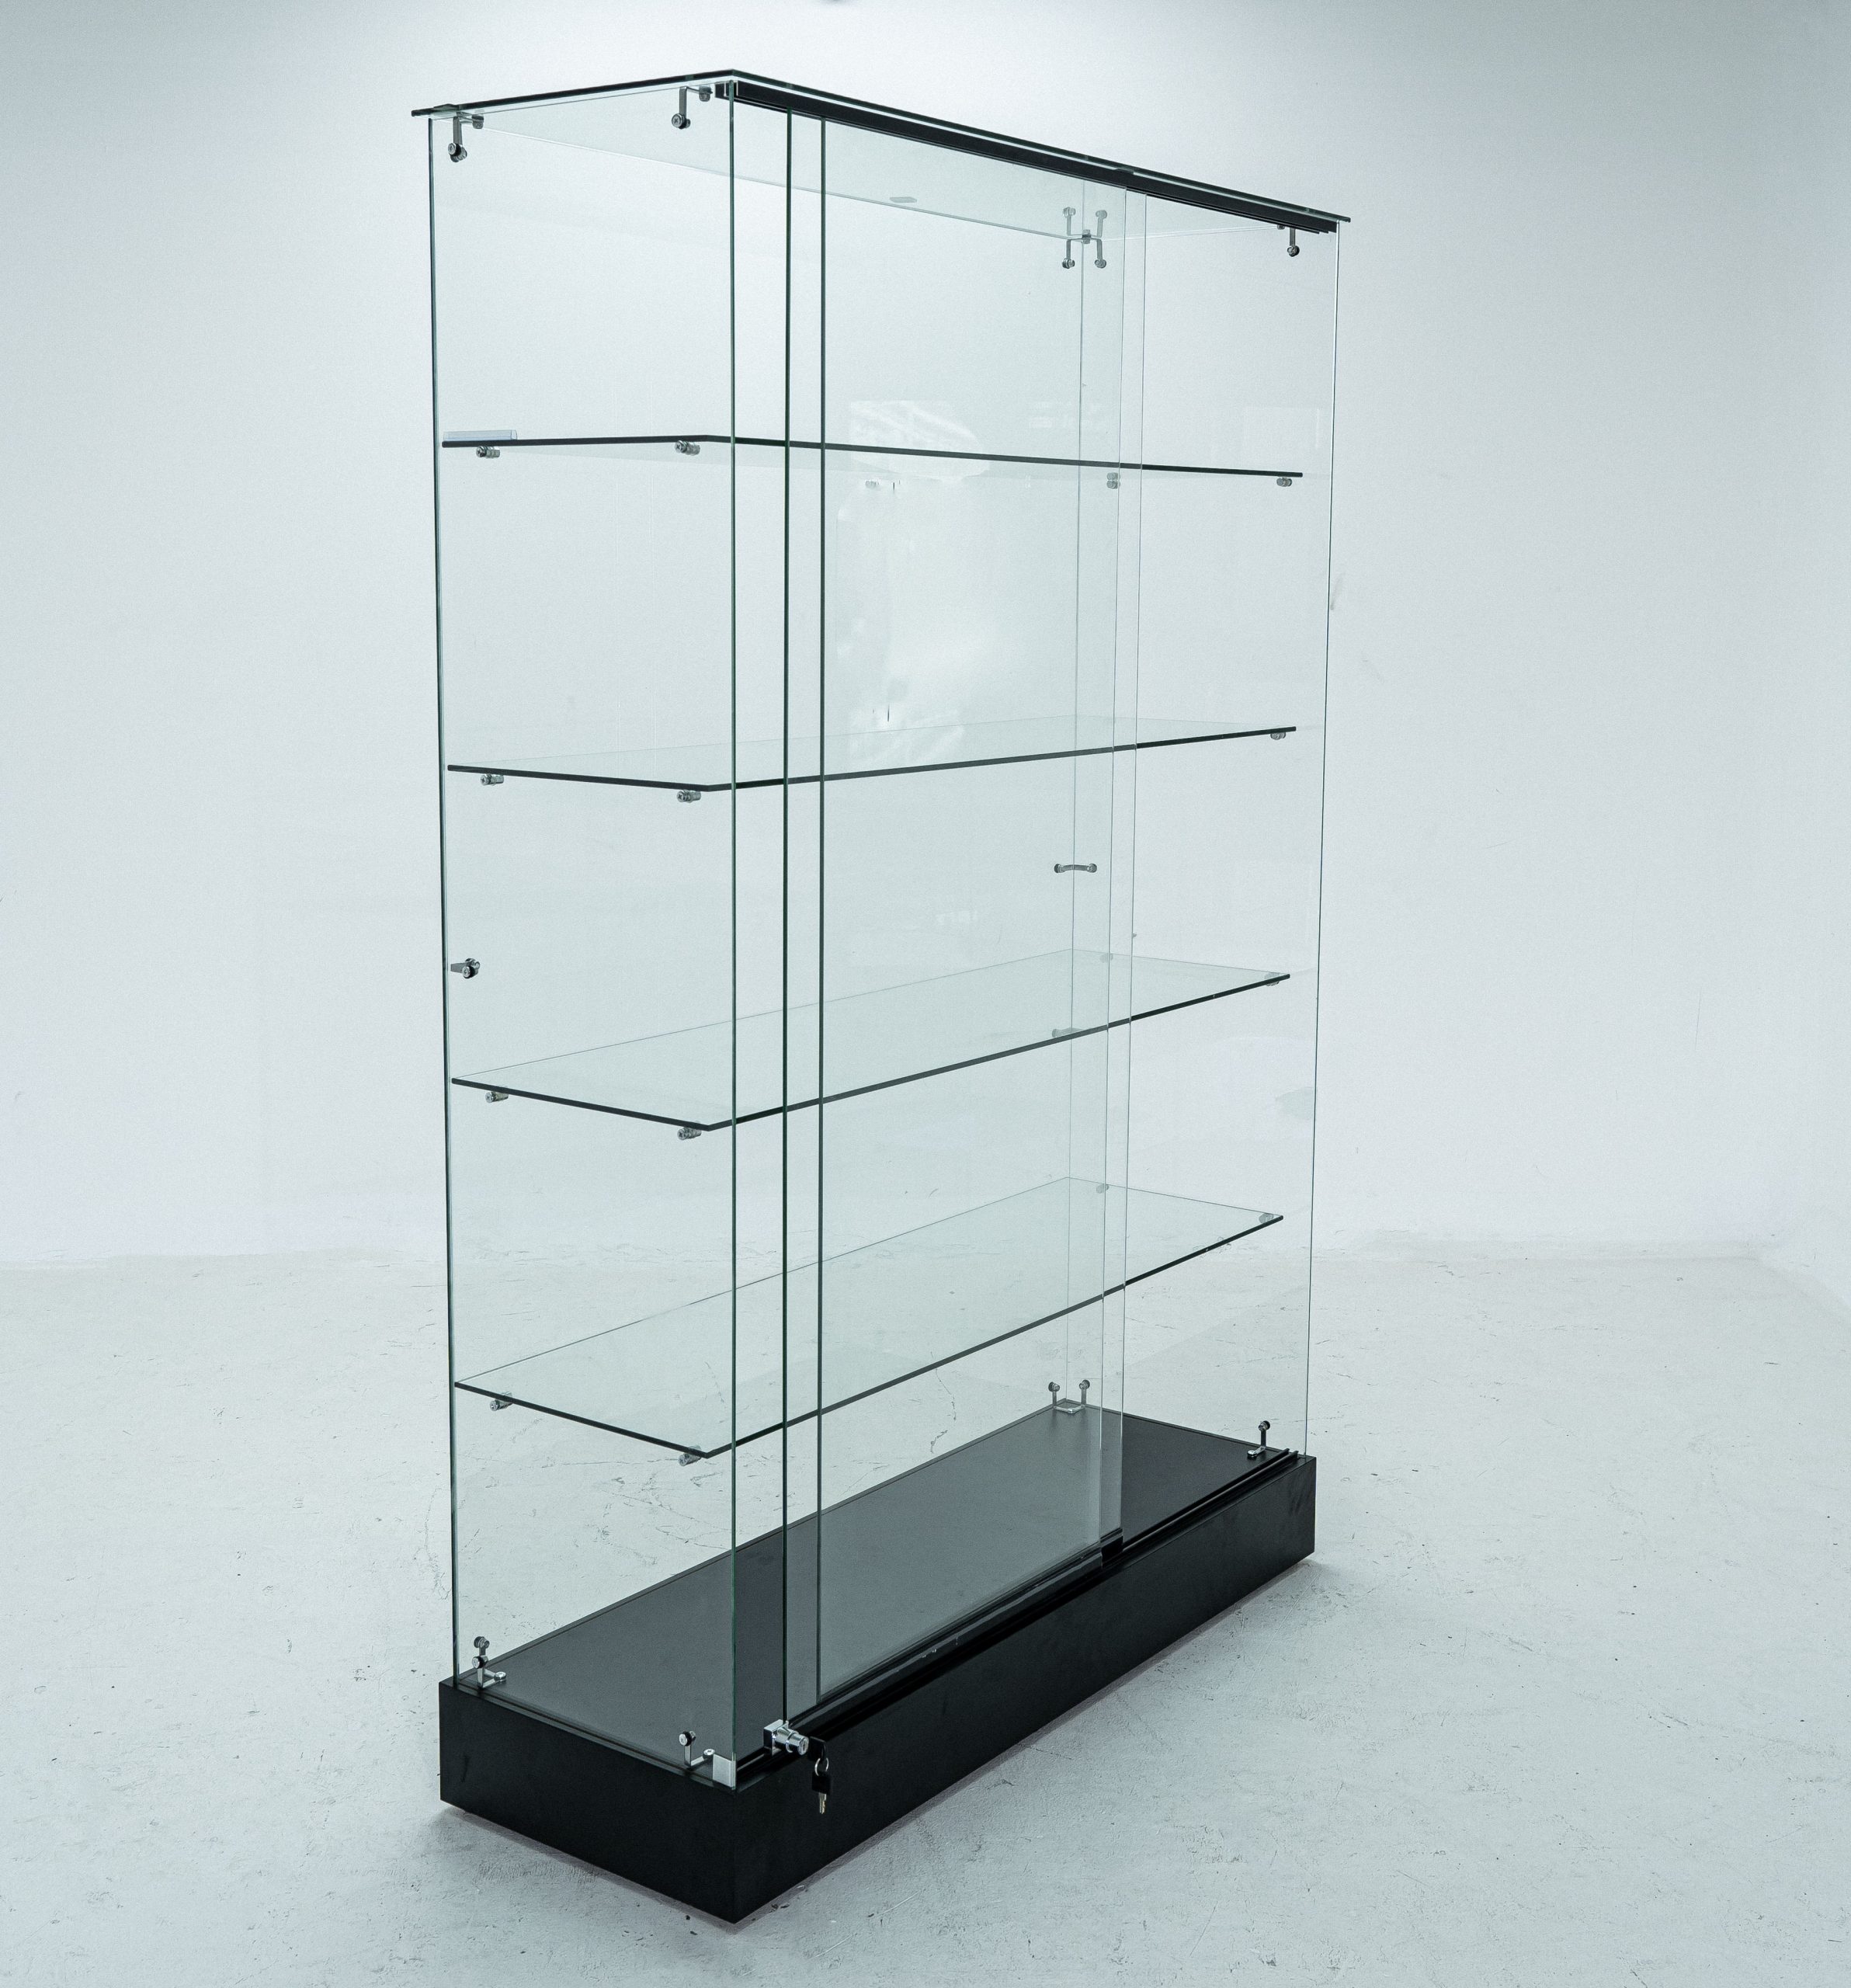 EXHIBIDORES DE VIDRIO: Los exhibidores de vidrio brindan modernidad y elegancia a cualquier espacio.